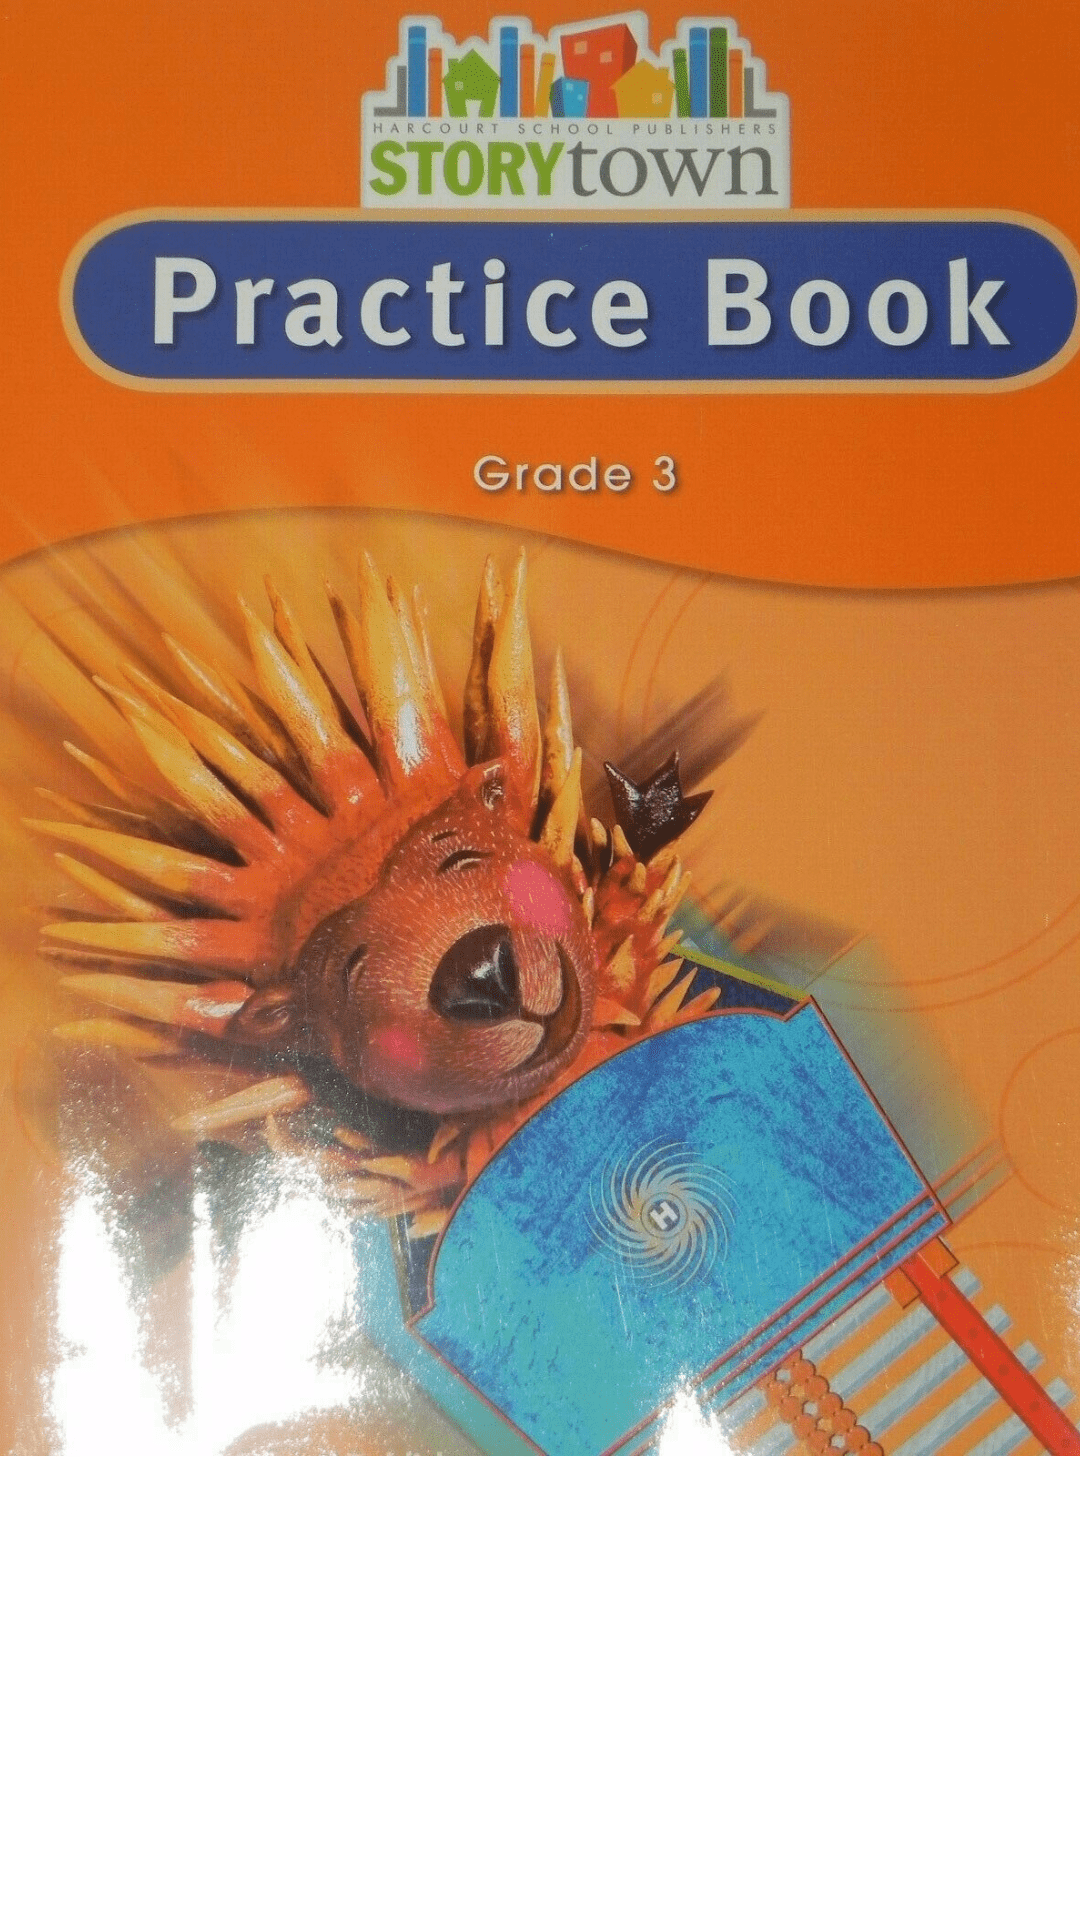 Practice Book: Grade 3